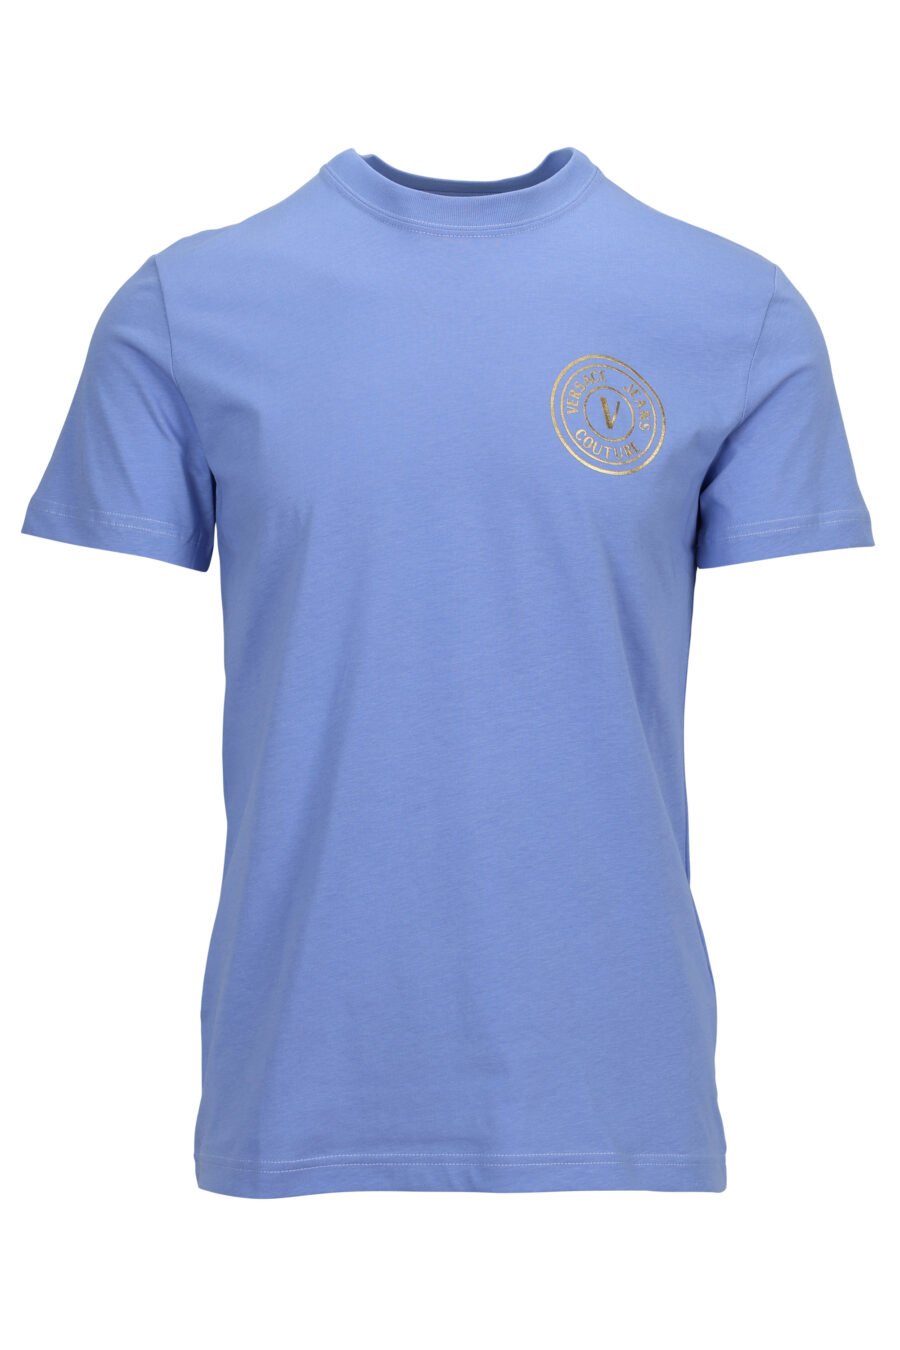 Camiseta azul claro con minilogo circular brillante - 8052019597455